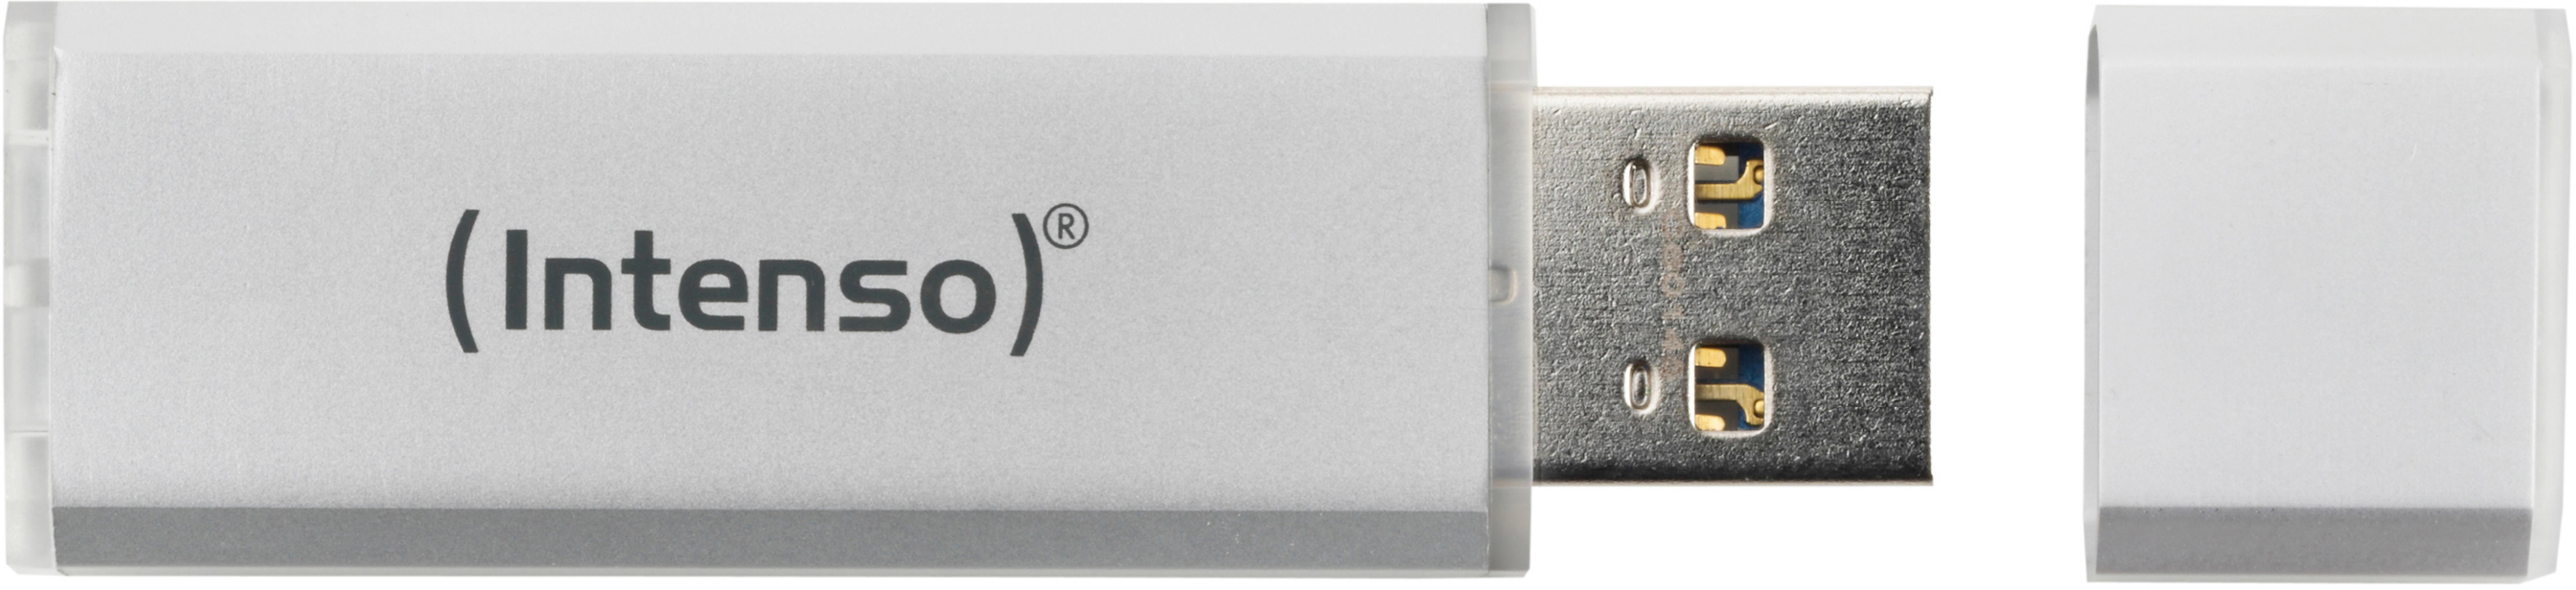 INTENSO 3521452 4GB (Silber, GB) LINE ALU USB-Stick SILBER 4 INT